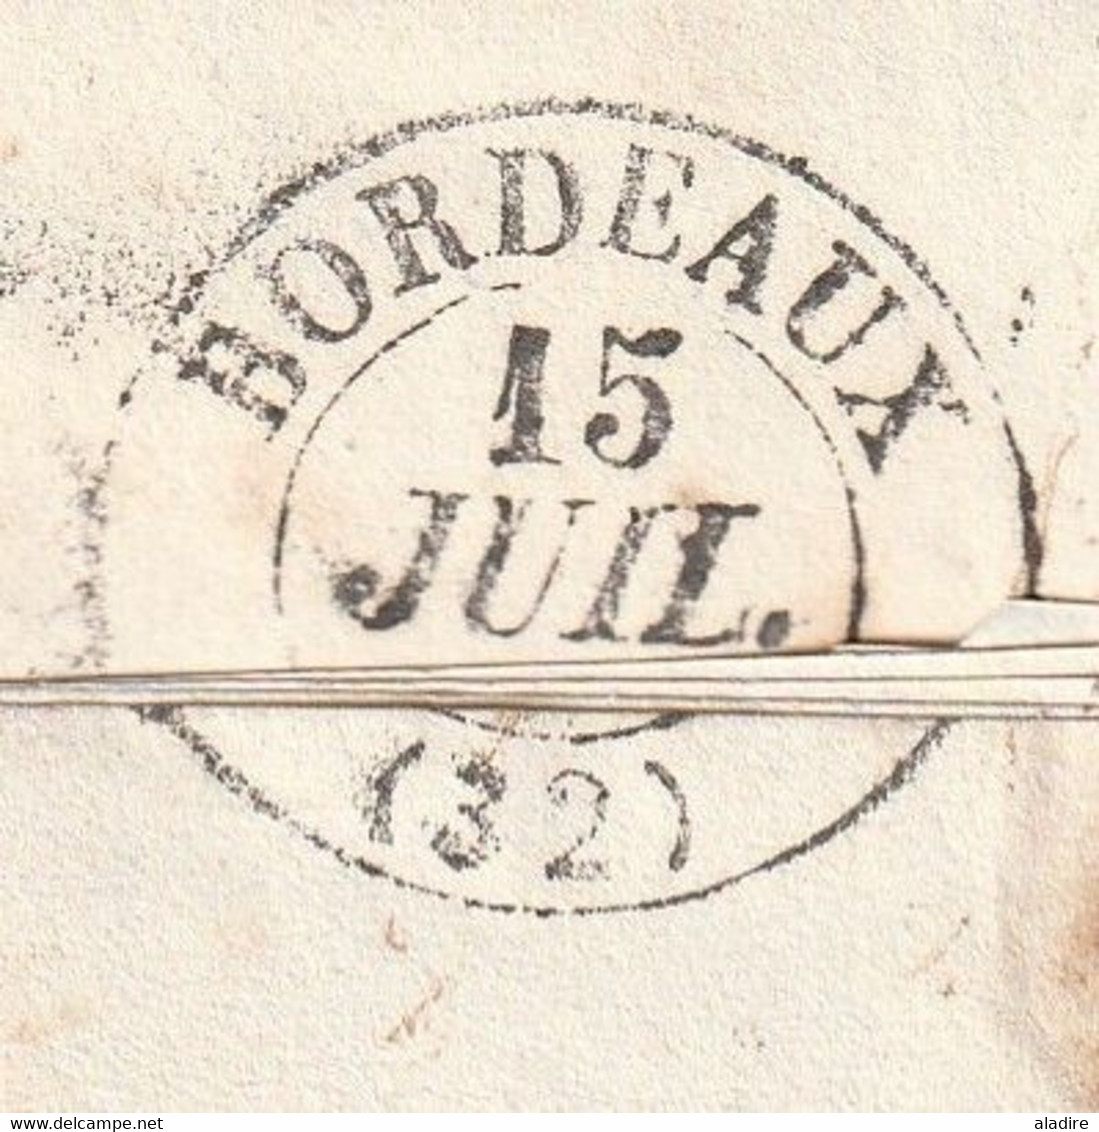 1837 - Tonneins, Lot et Garonne, cad type 12 sur LAC  vers Bordeaux - Décime rural en rouge - Boîte Rurale I - Mas